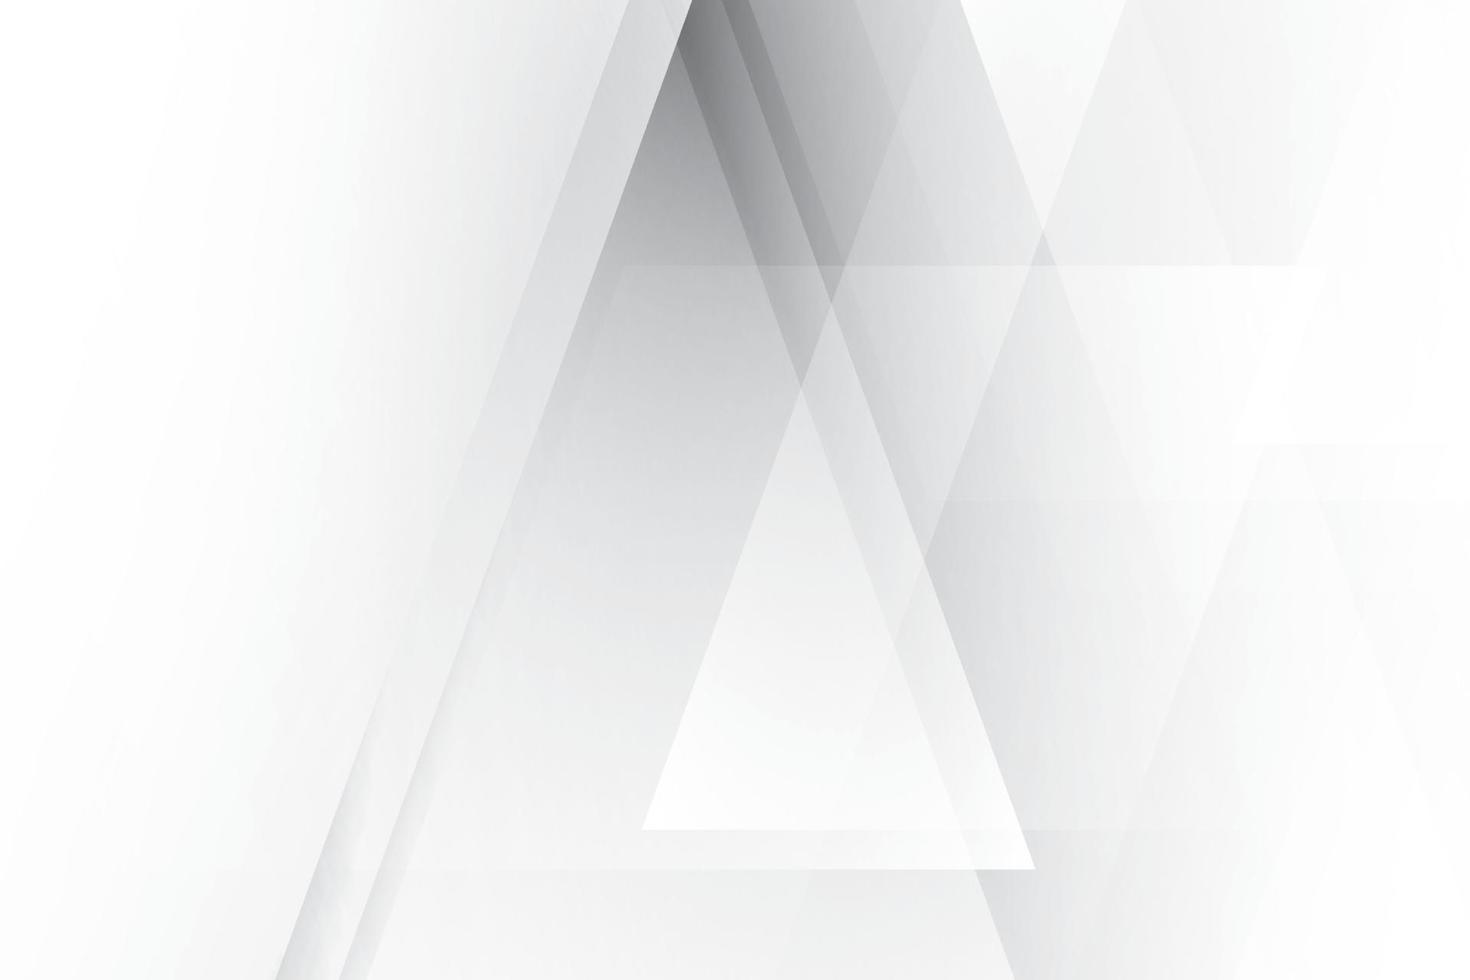 abstrakt vit och grå färg, modern designbakgrund med geometrisk form. vektor illustration.